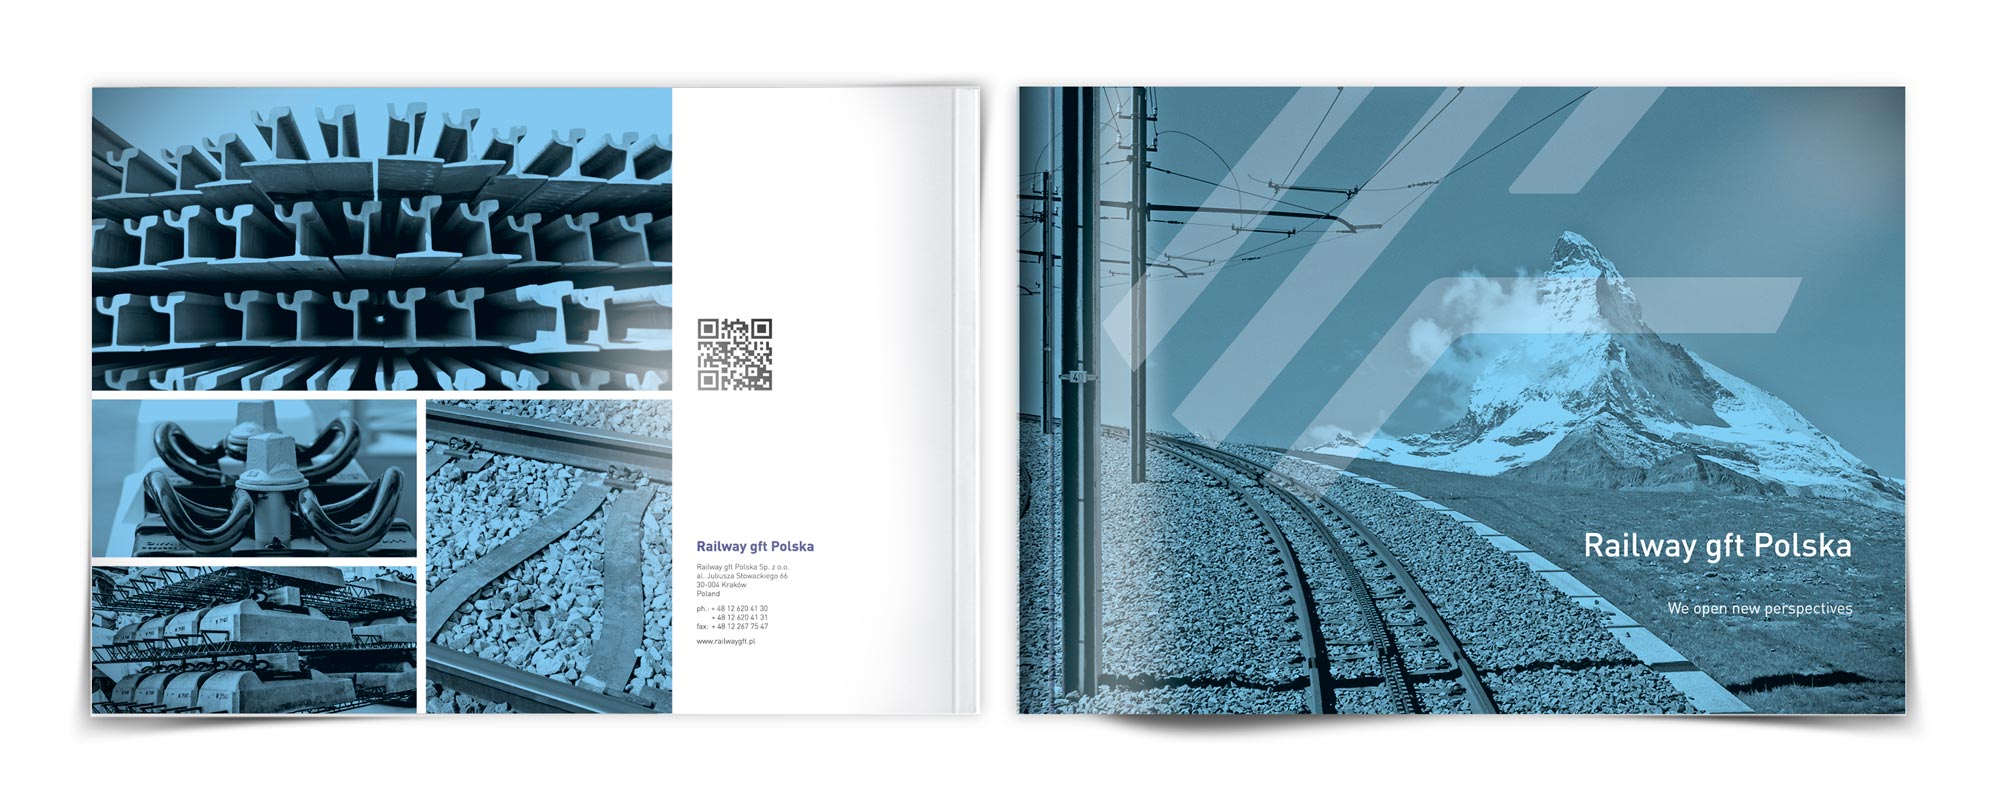 Okładka (Matterhorn) katalogu materiałow do budowy i remontu torowis kolejowych oraz tramwajowych dla Grupa ZUE